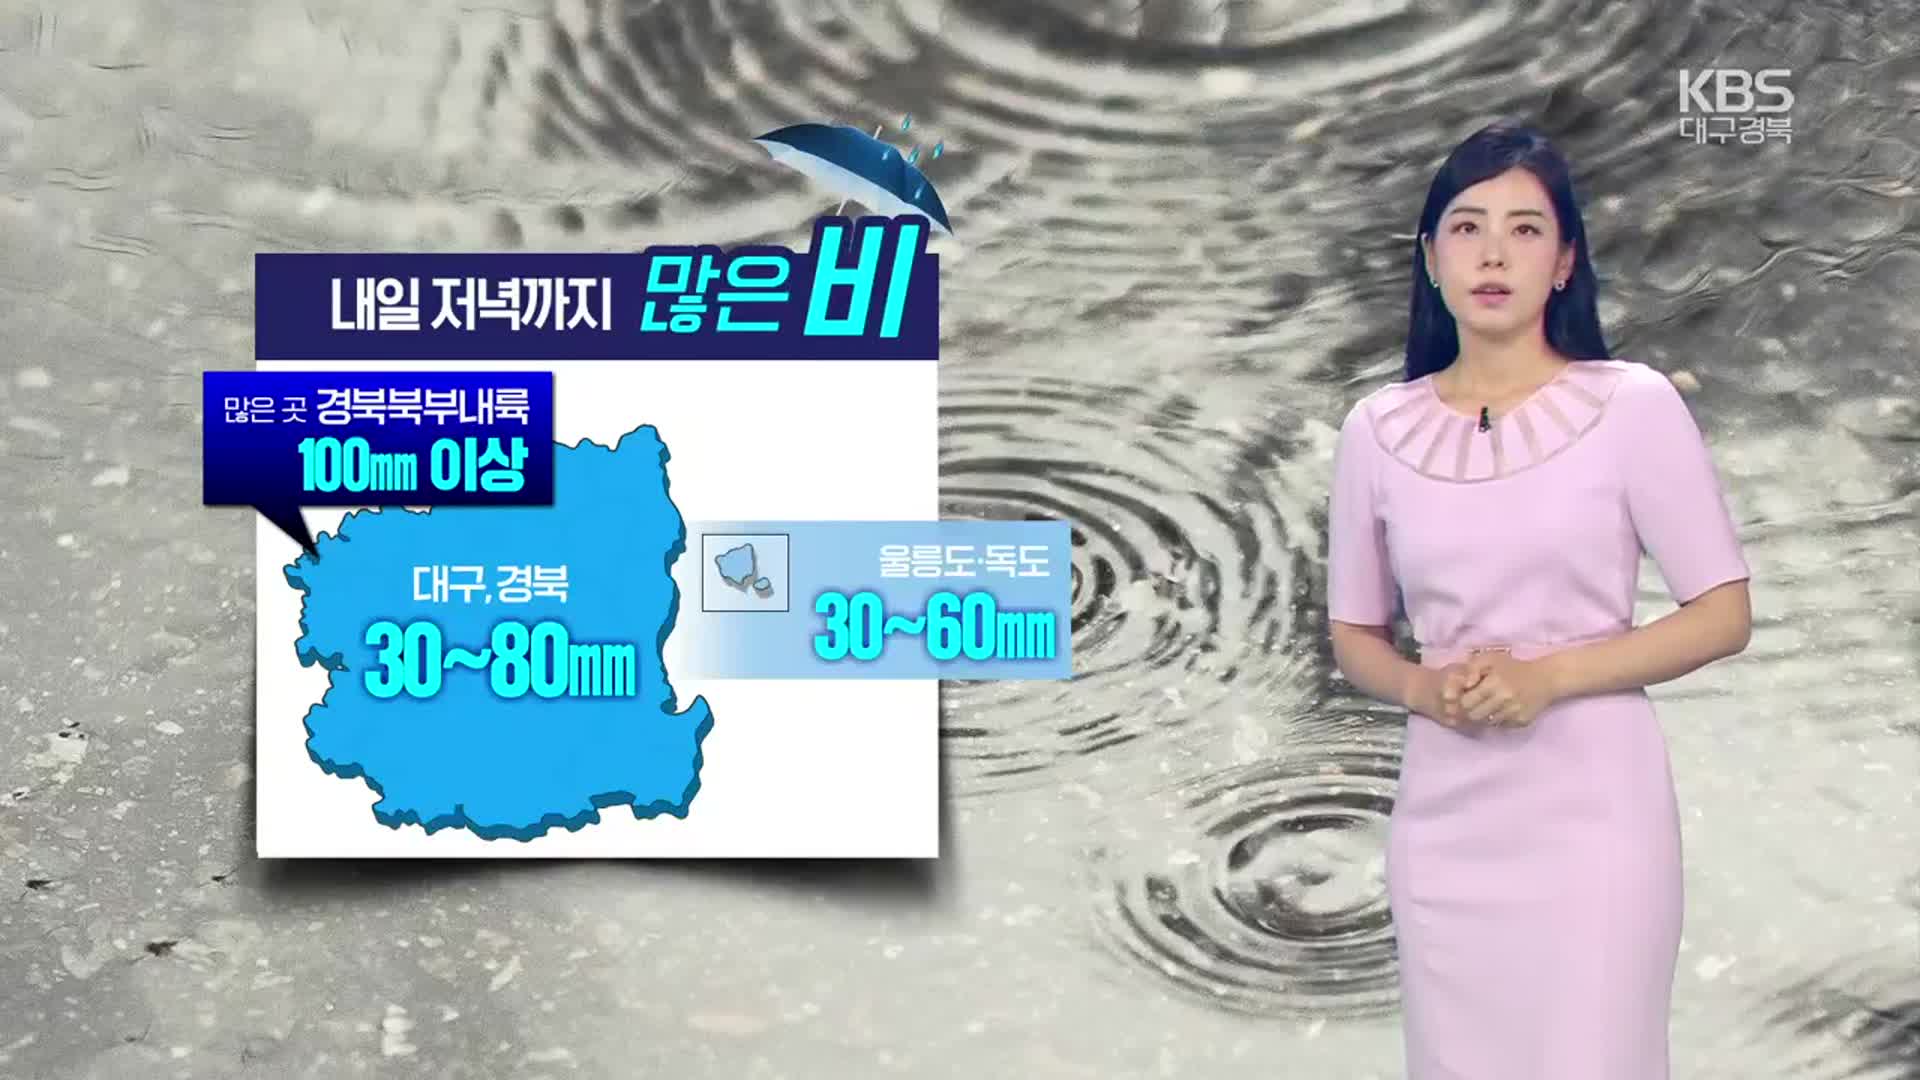 [날씨] 경북 곳곳 호우특보…대구·경북 내일까지 최대 100mm ↑ 비